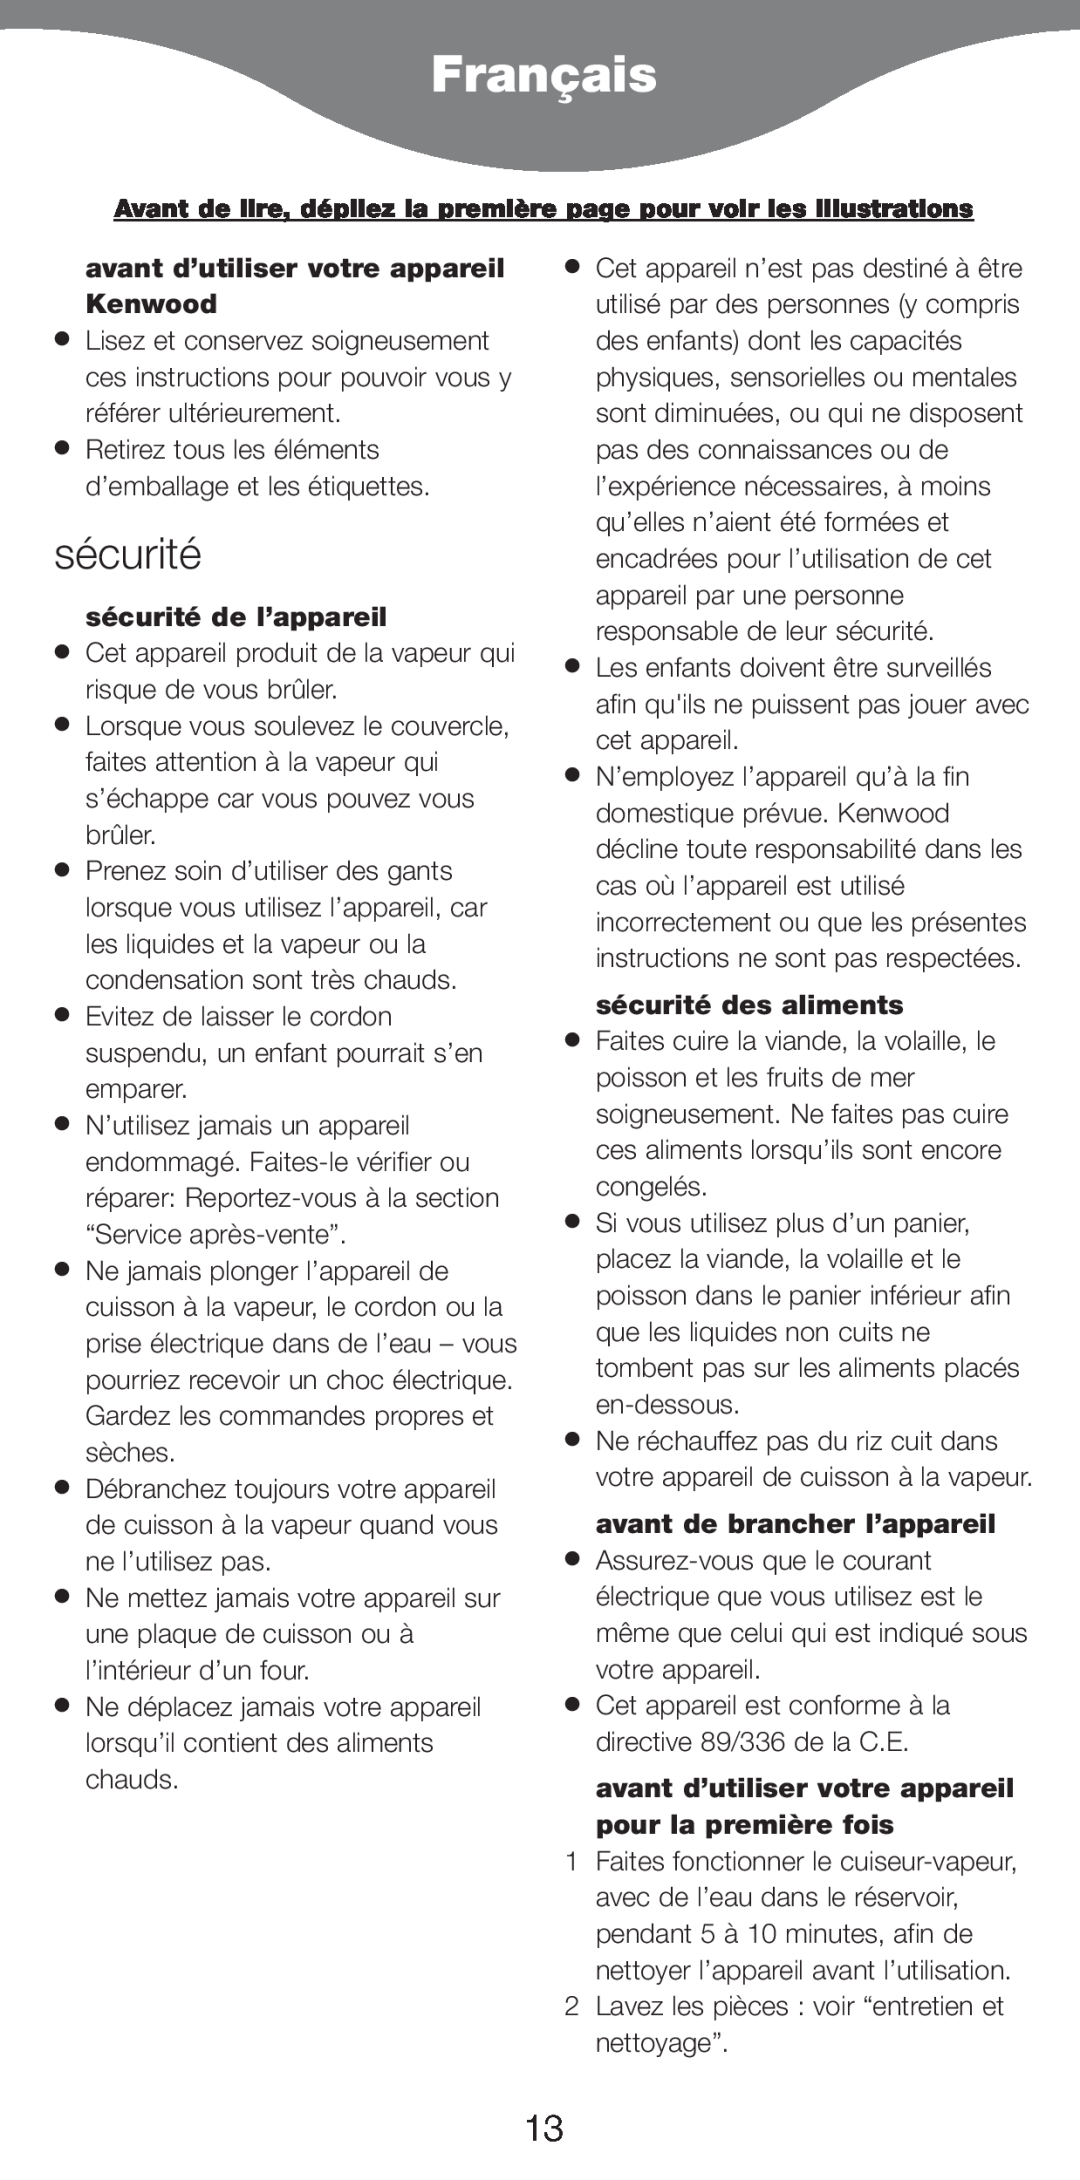 Kenwood FS620 manual Français, avant d’utiliser votre appareil Kenwood, sécurité de l’appareil, sécurité des aliments 